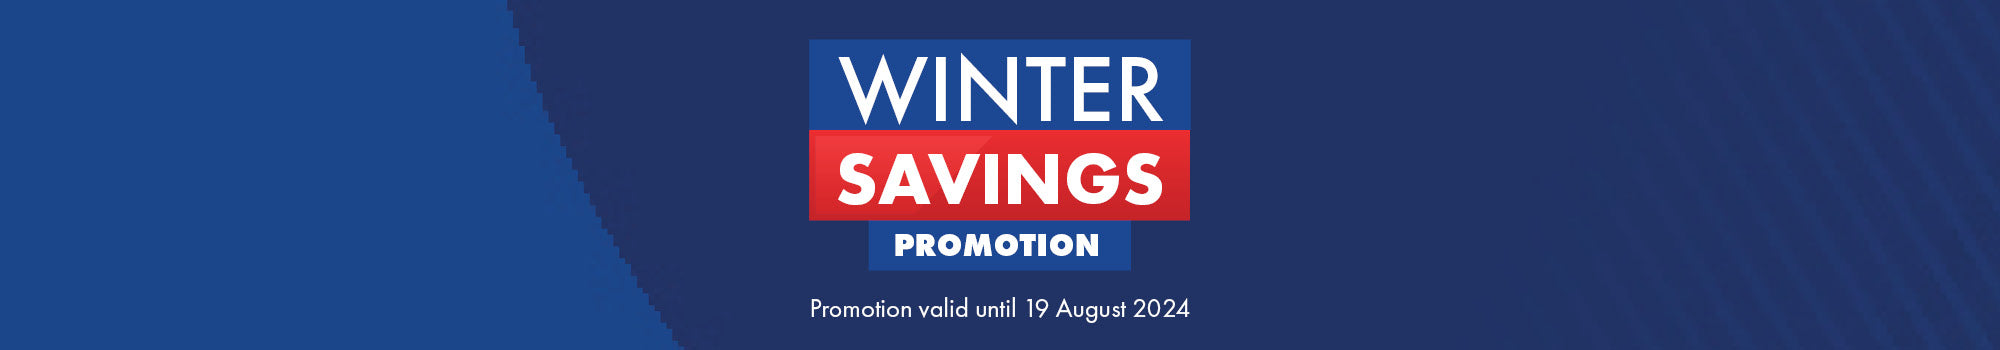 Winter Savings Promotion